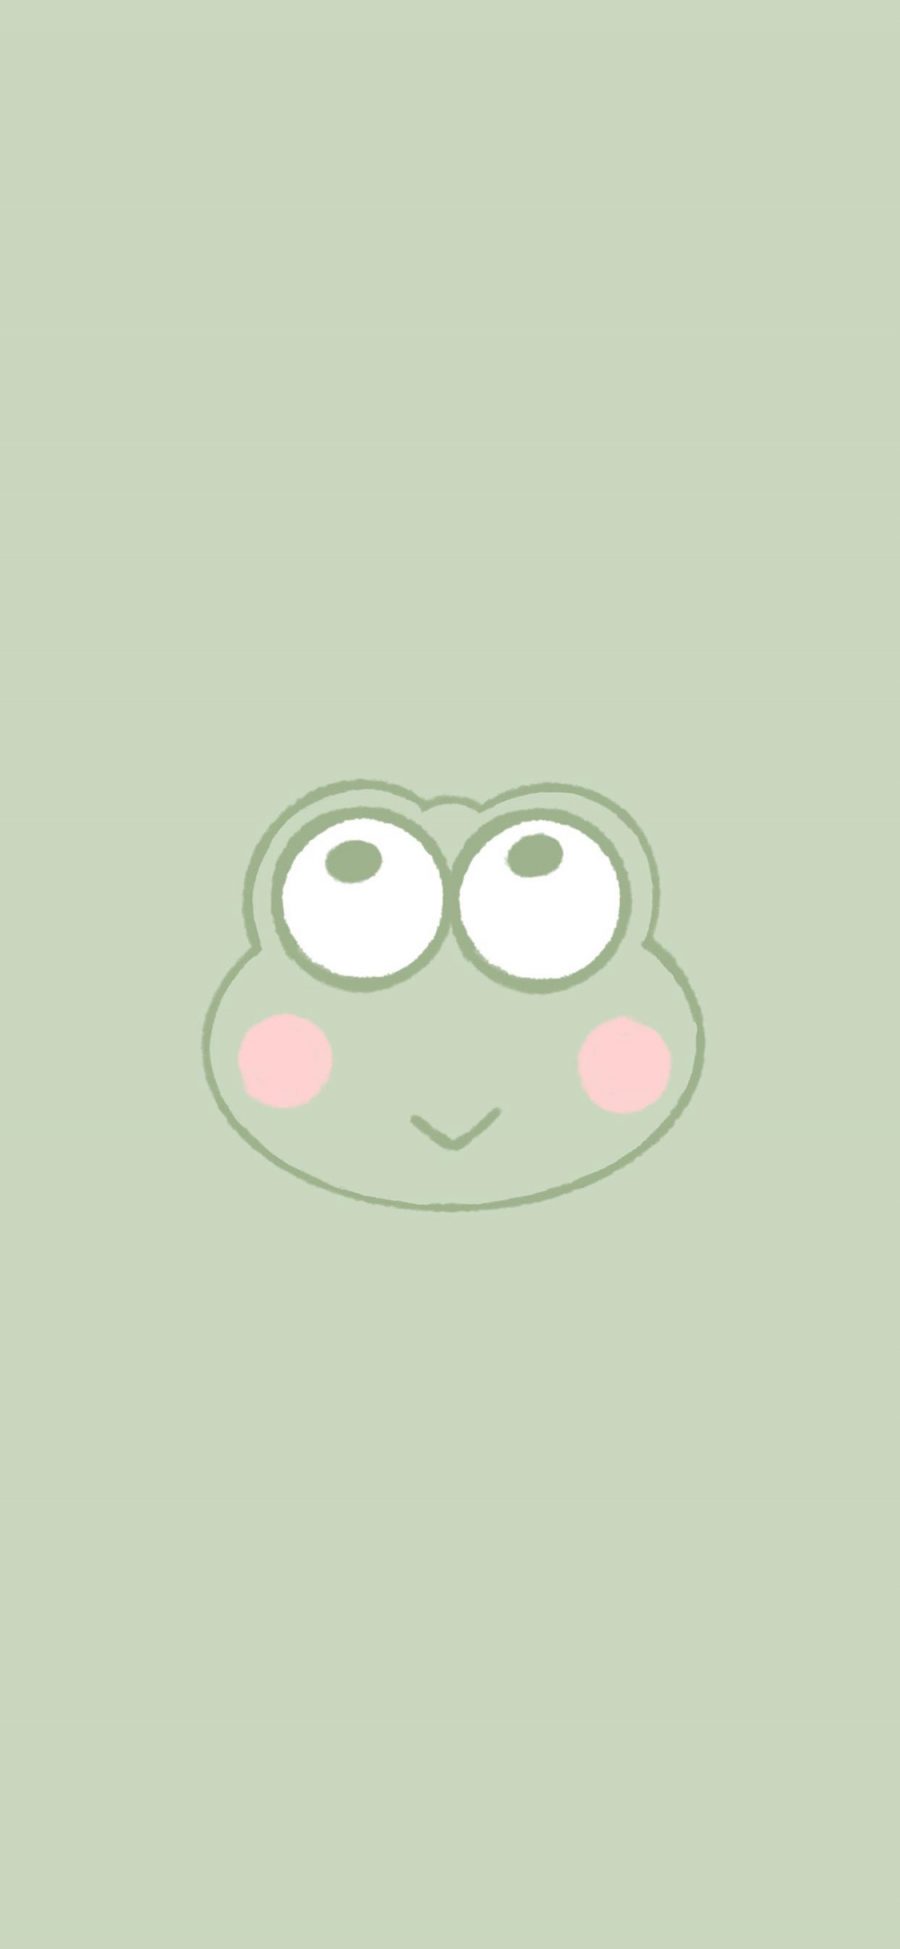 [2436×1125]青蛙 卡通 可爱 绿 苹果手机动漫壁纸图片